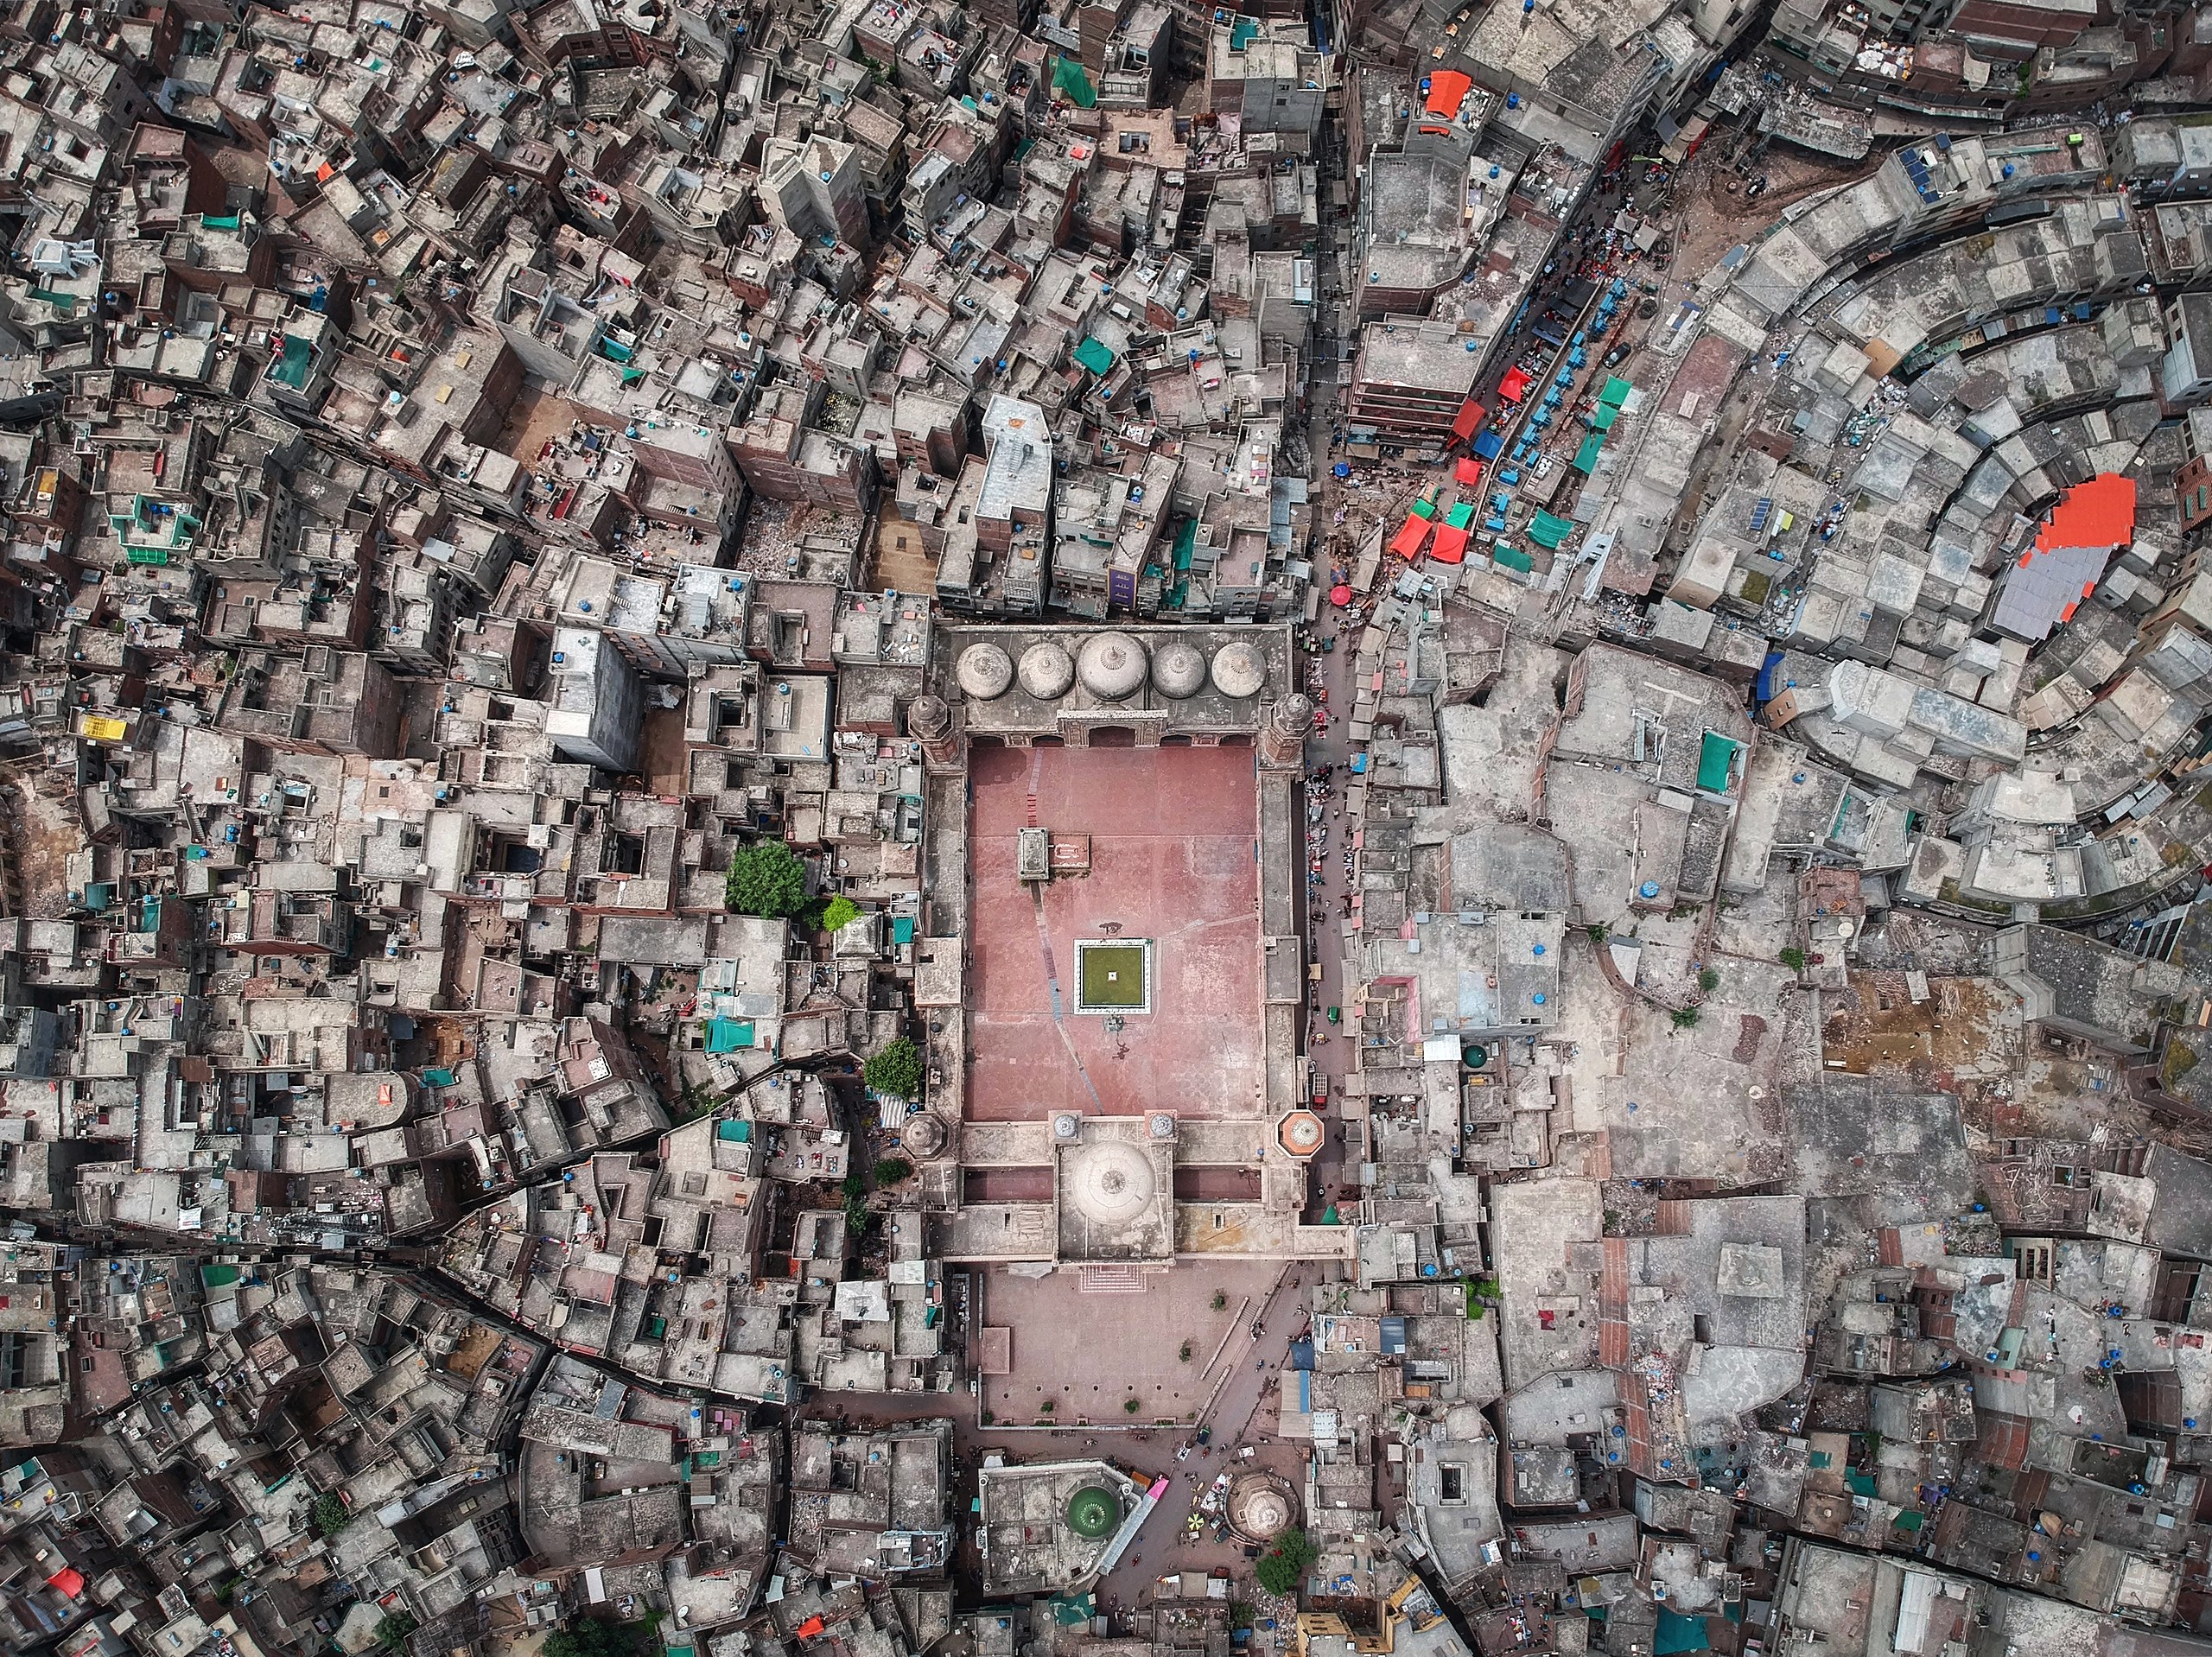 De stadsuitbreiding van de ommuurde stad Lahore zoals vandaag vanuit de lucht wordt bekeken.